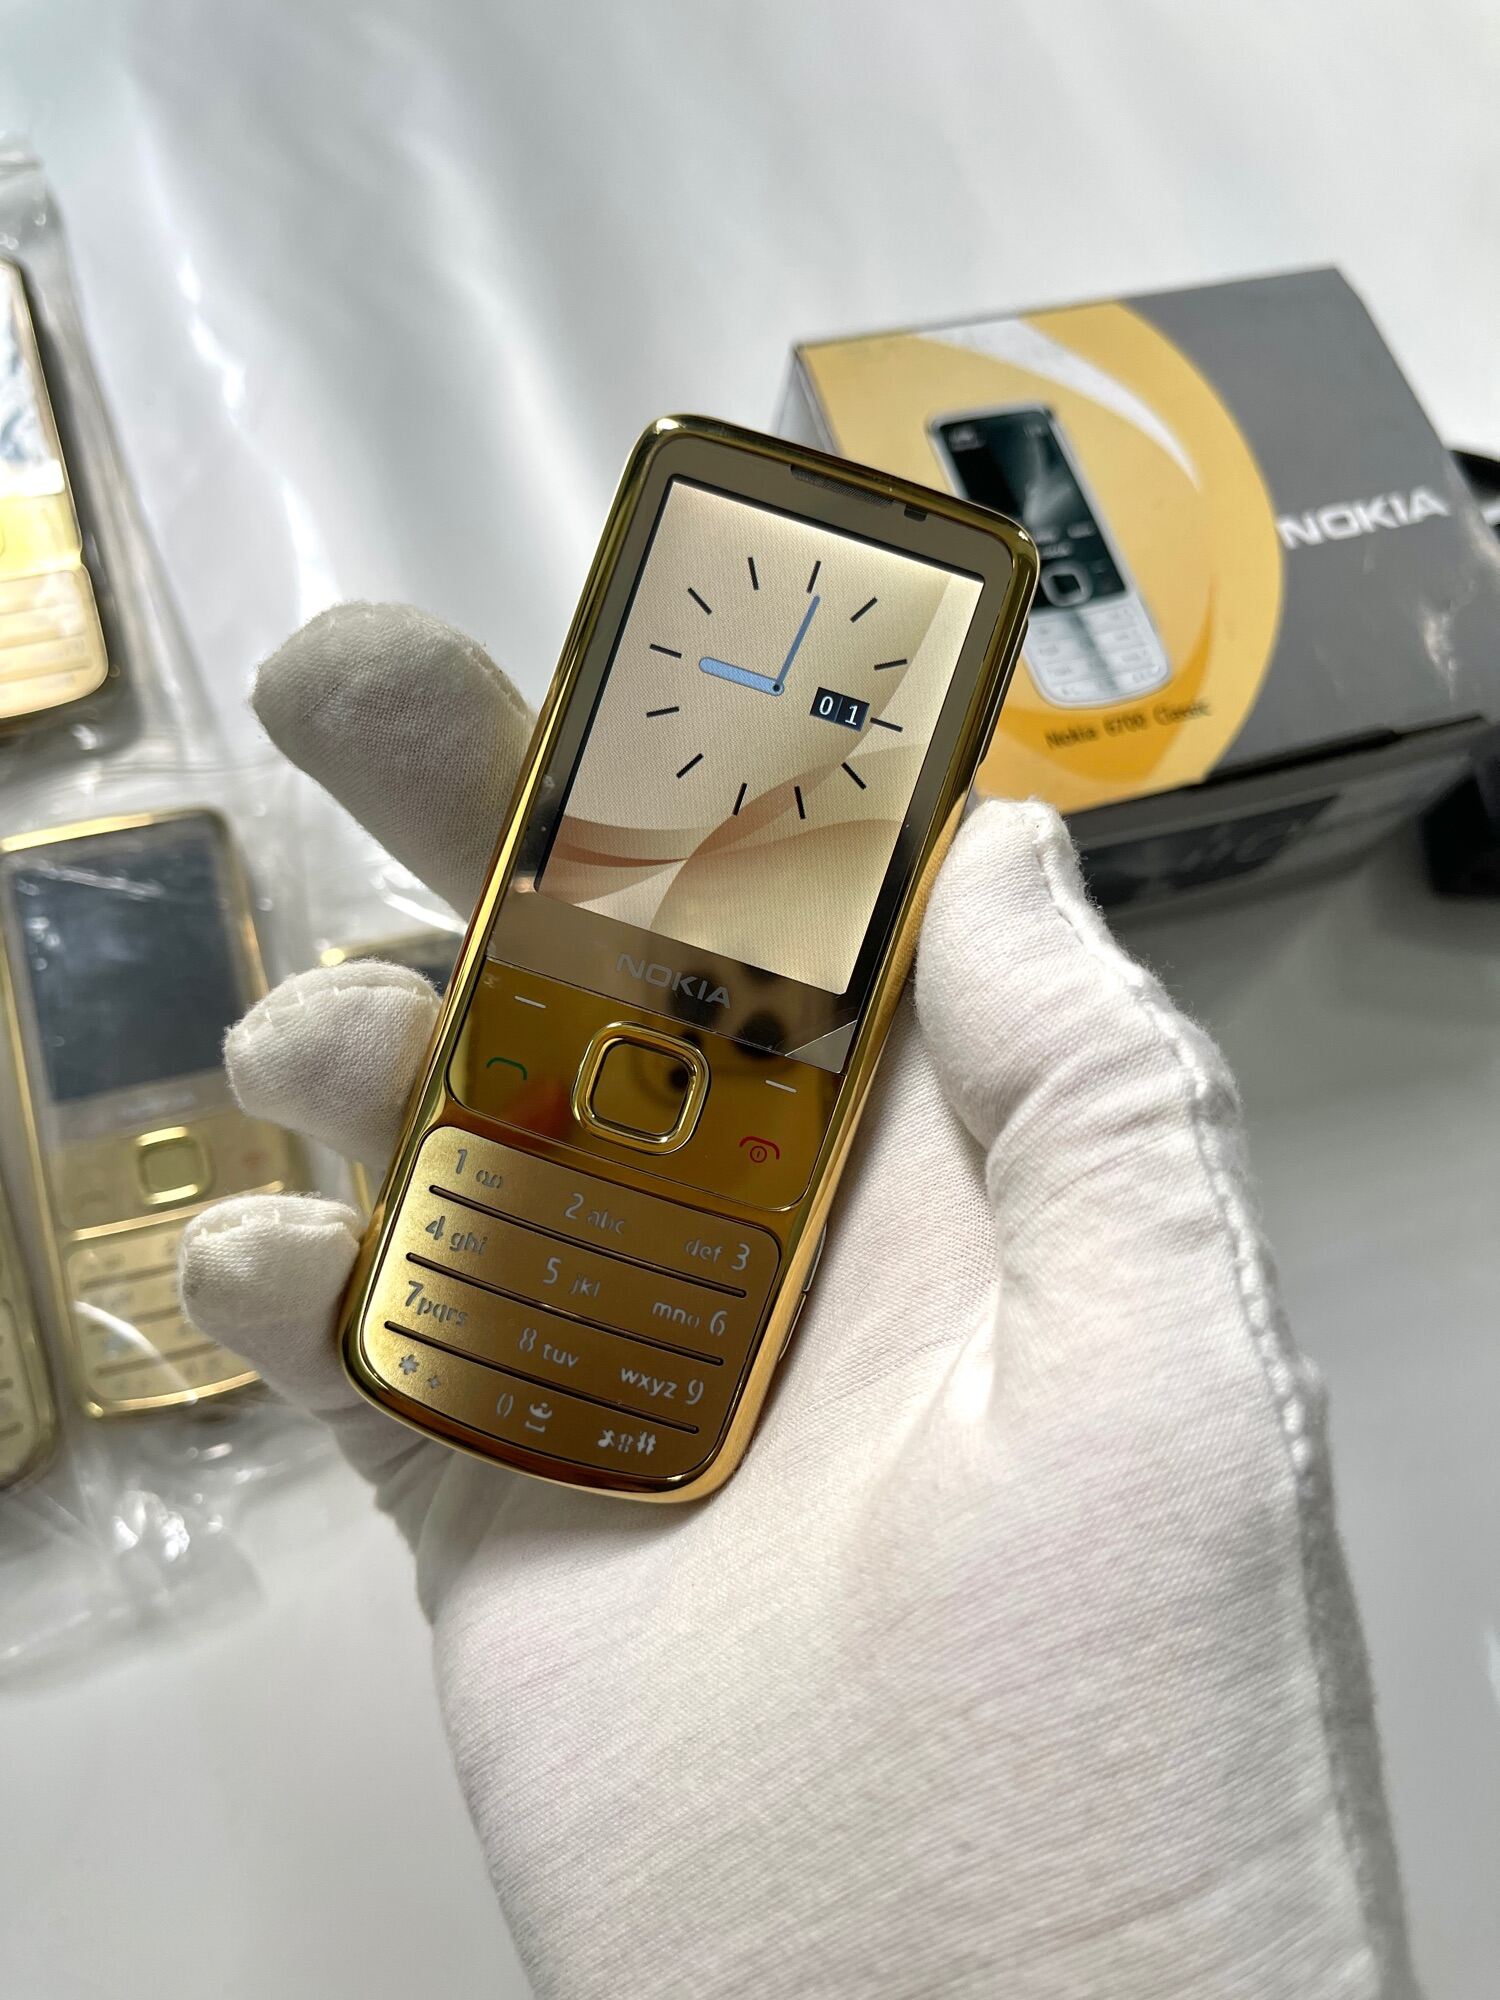 Điện thoại Nokia 6700 gold zin chính hãng phụ kiện | Bảo hành 12 tháng